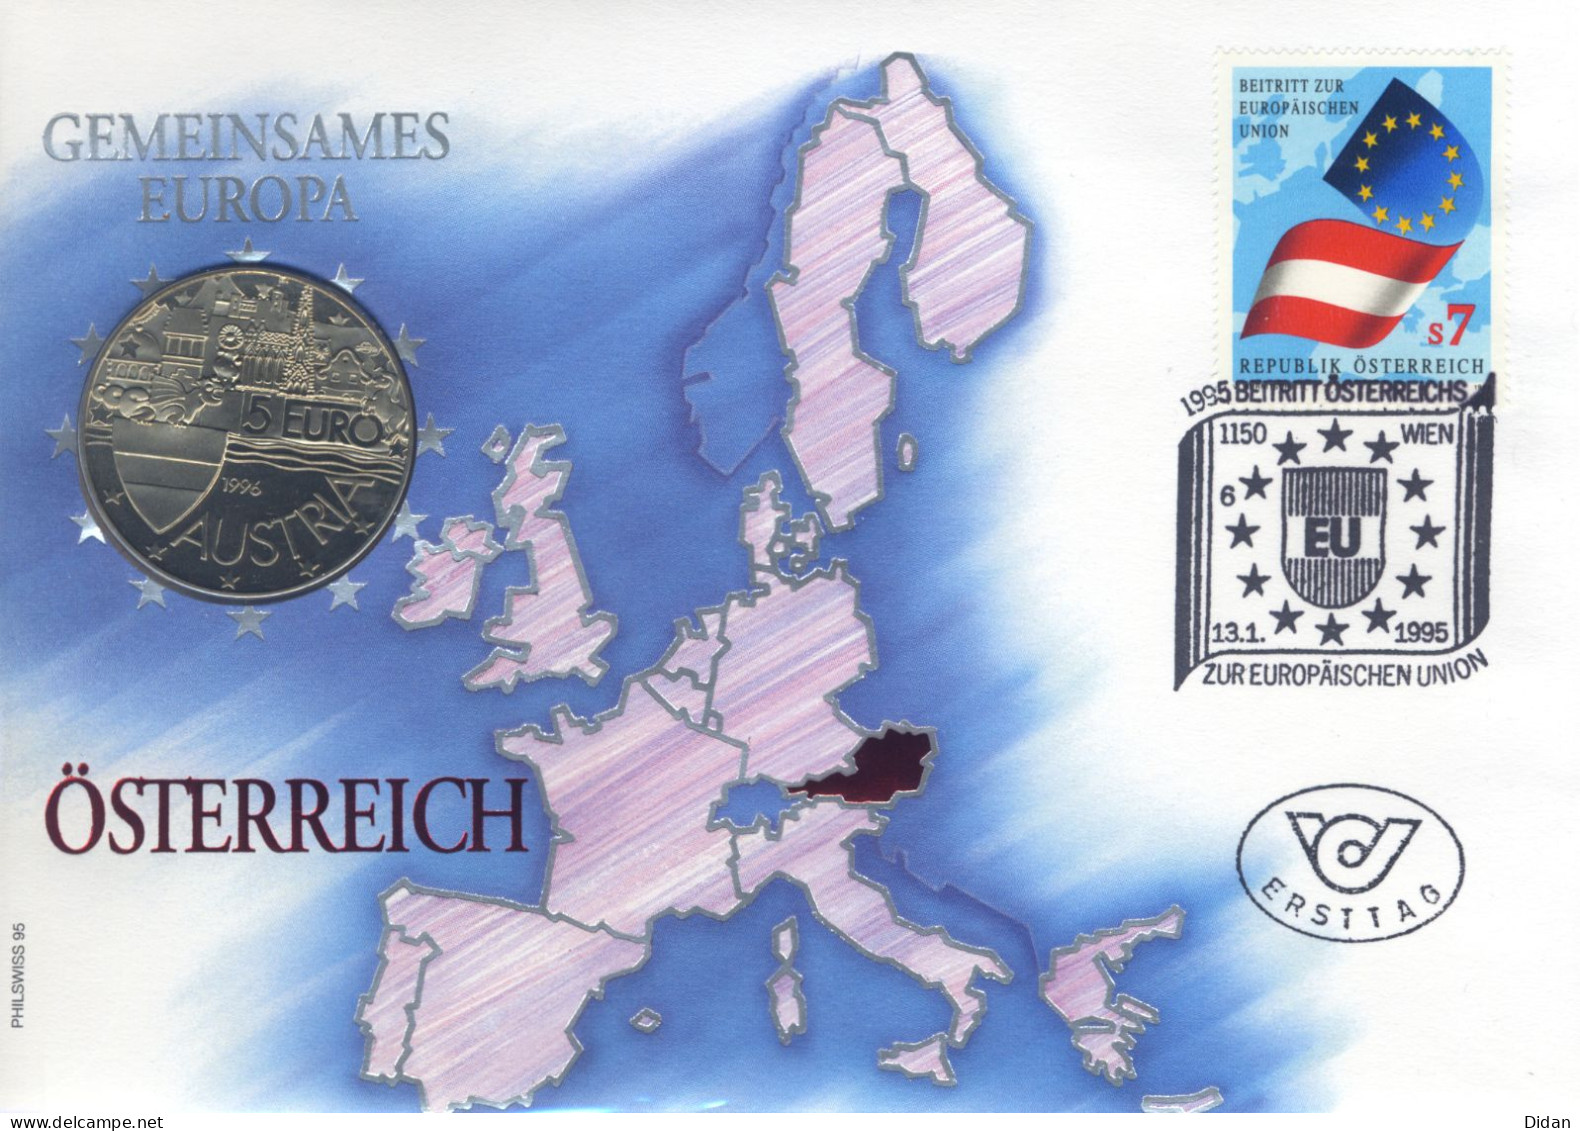 1996 Pièce Commémorative De 5€ "1000 Jahre Ostarrichi" Lettre Monnaie Illustrée "Gemeinsames Europa" Numisbrief - Austria